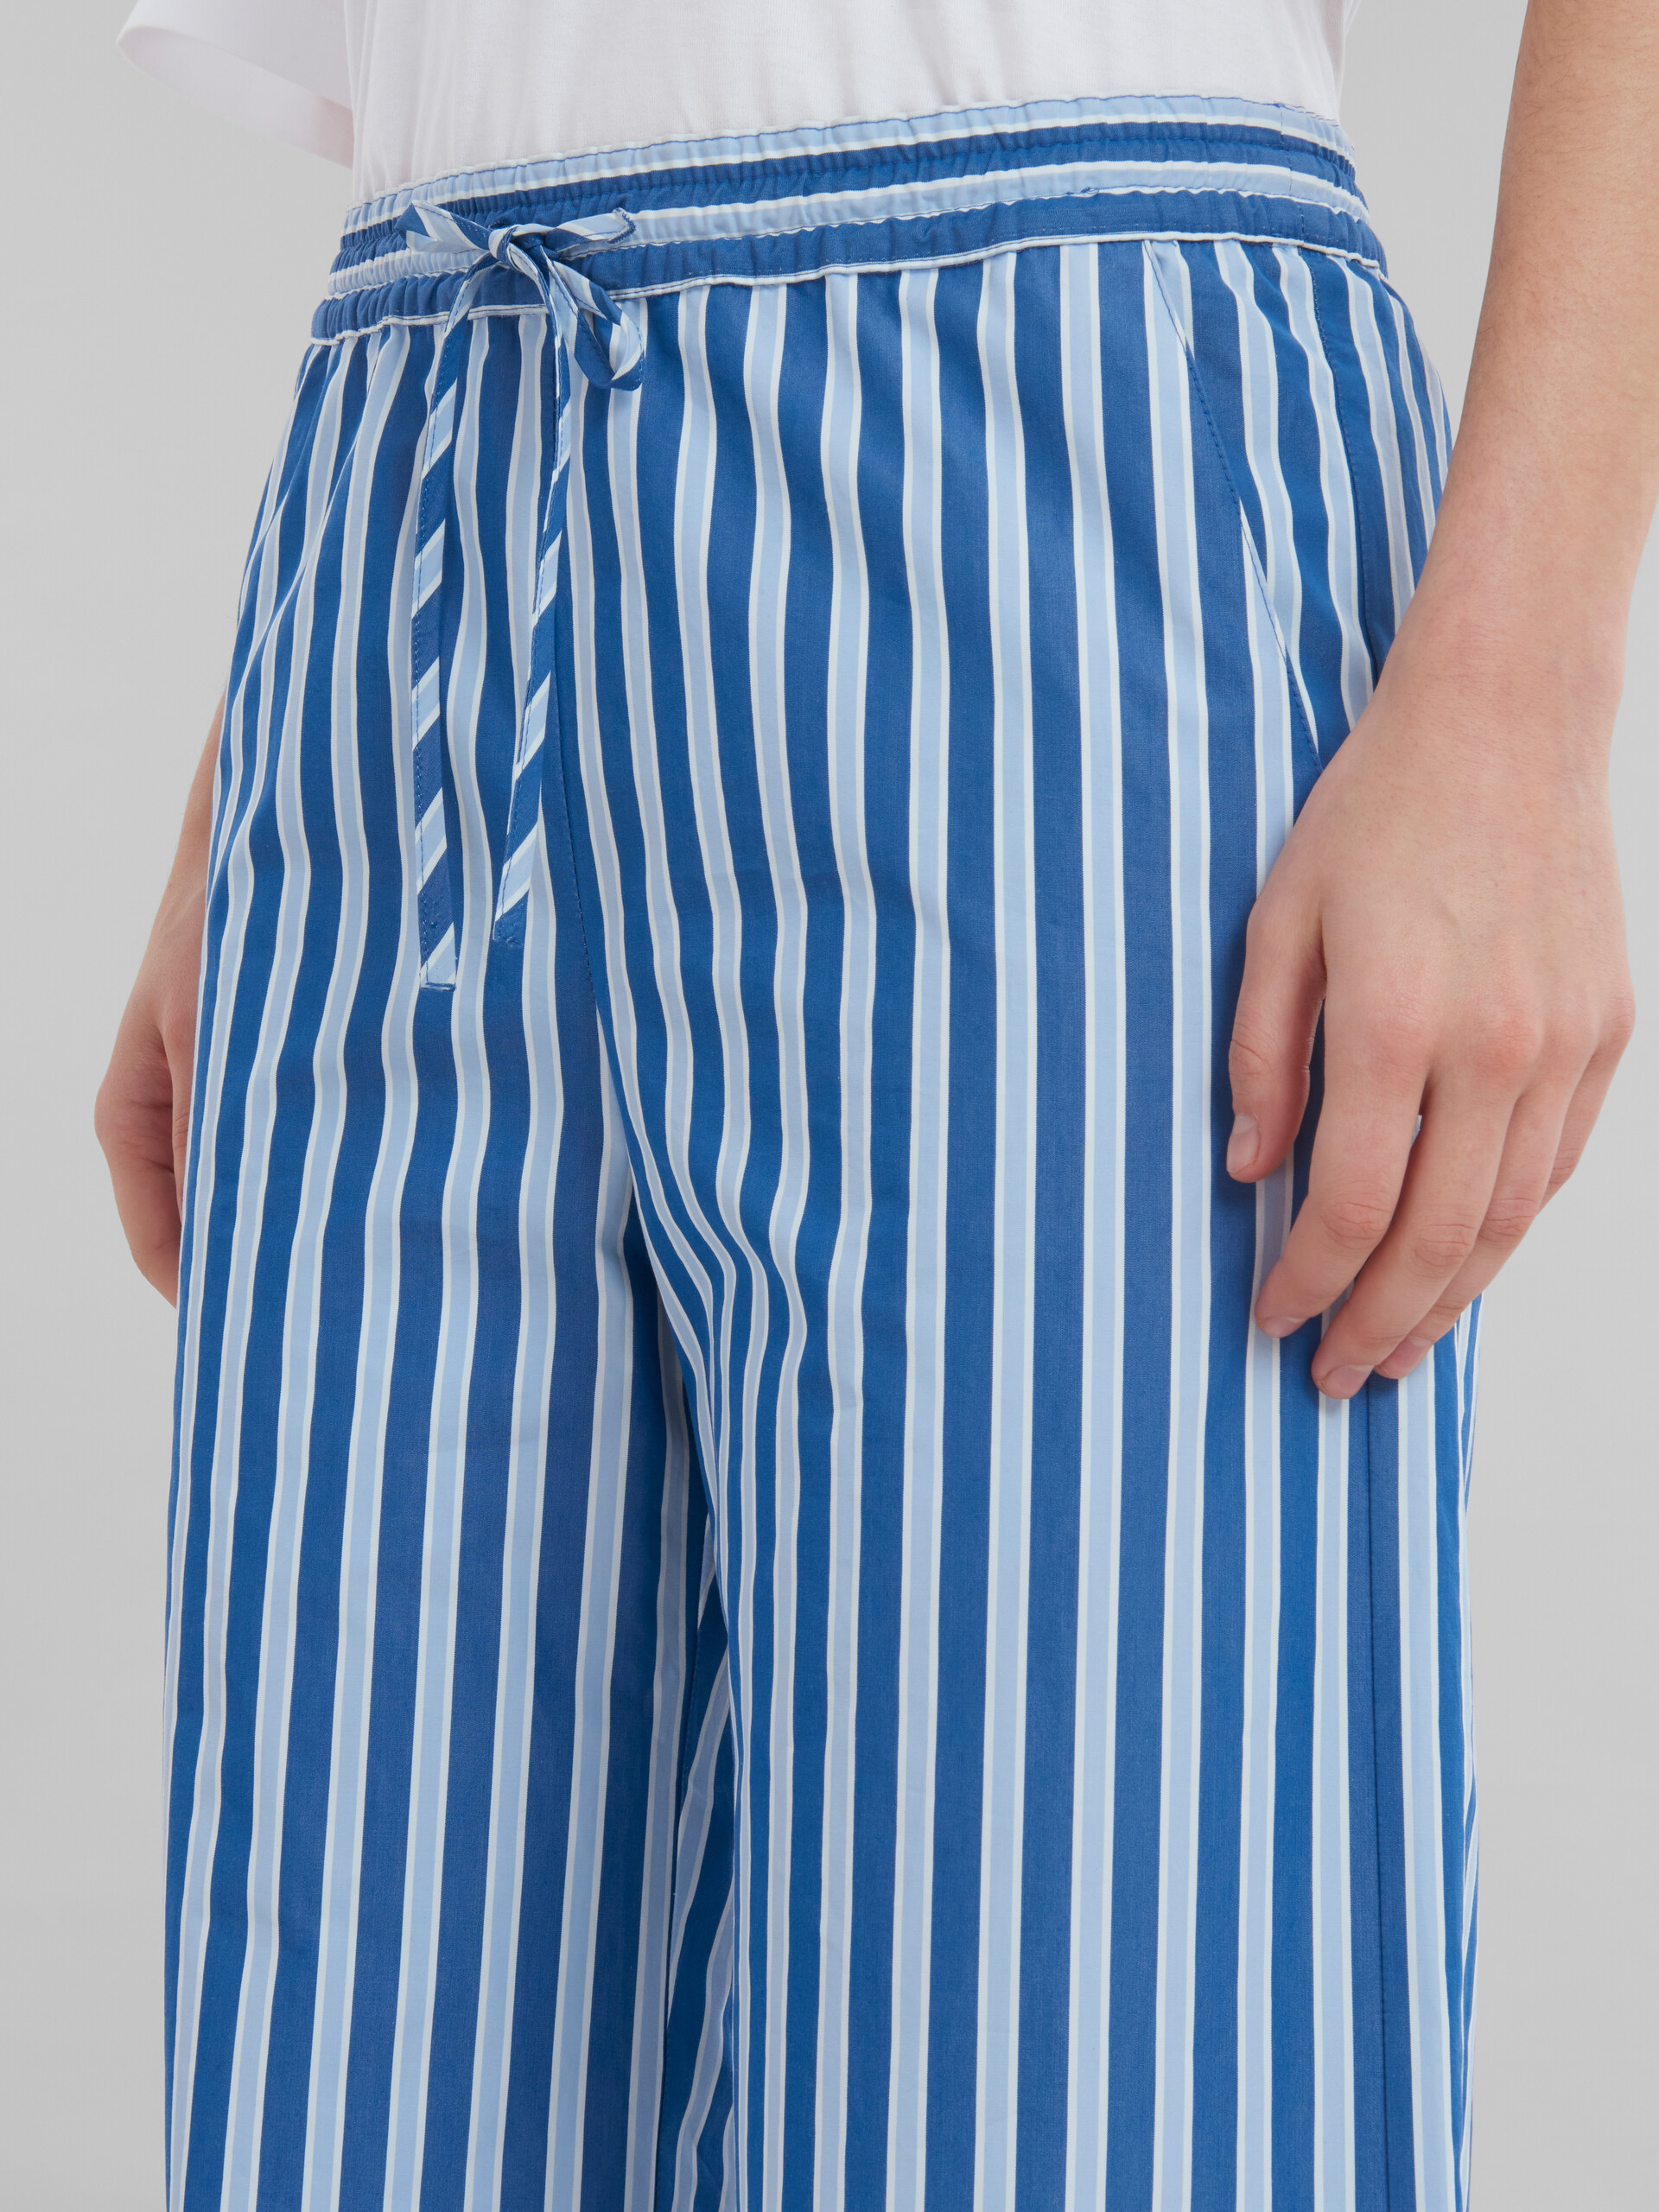 Pantaloni pigiama in cotone biologico a righe bianche e blu - Pantaloni - Image 4